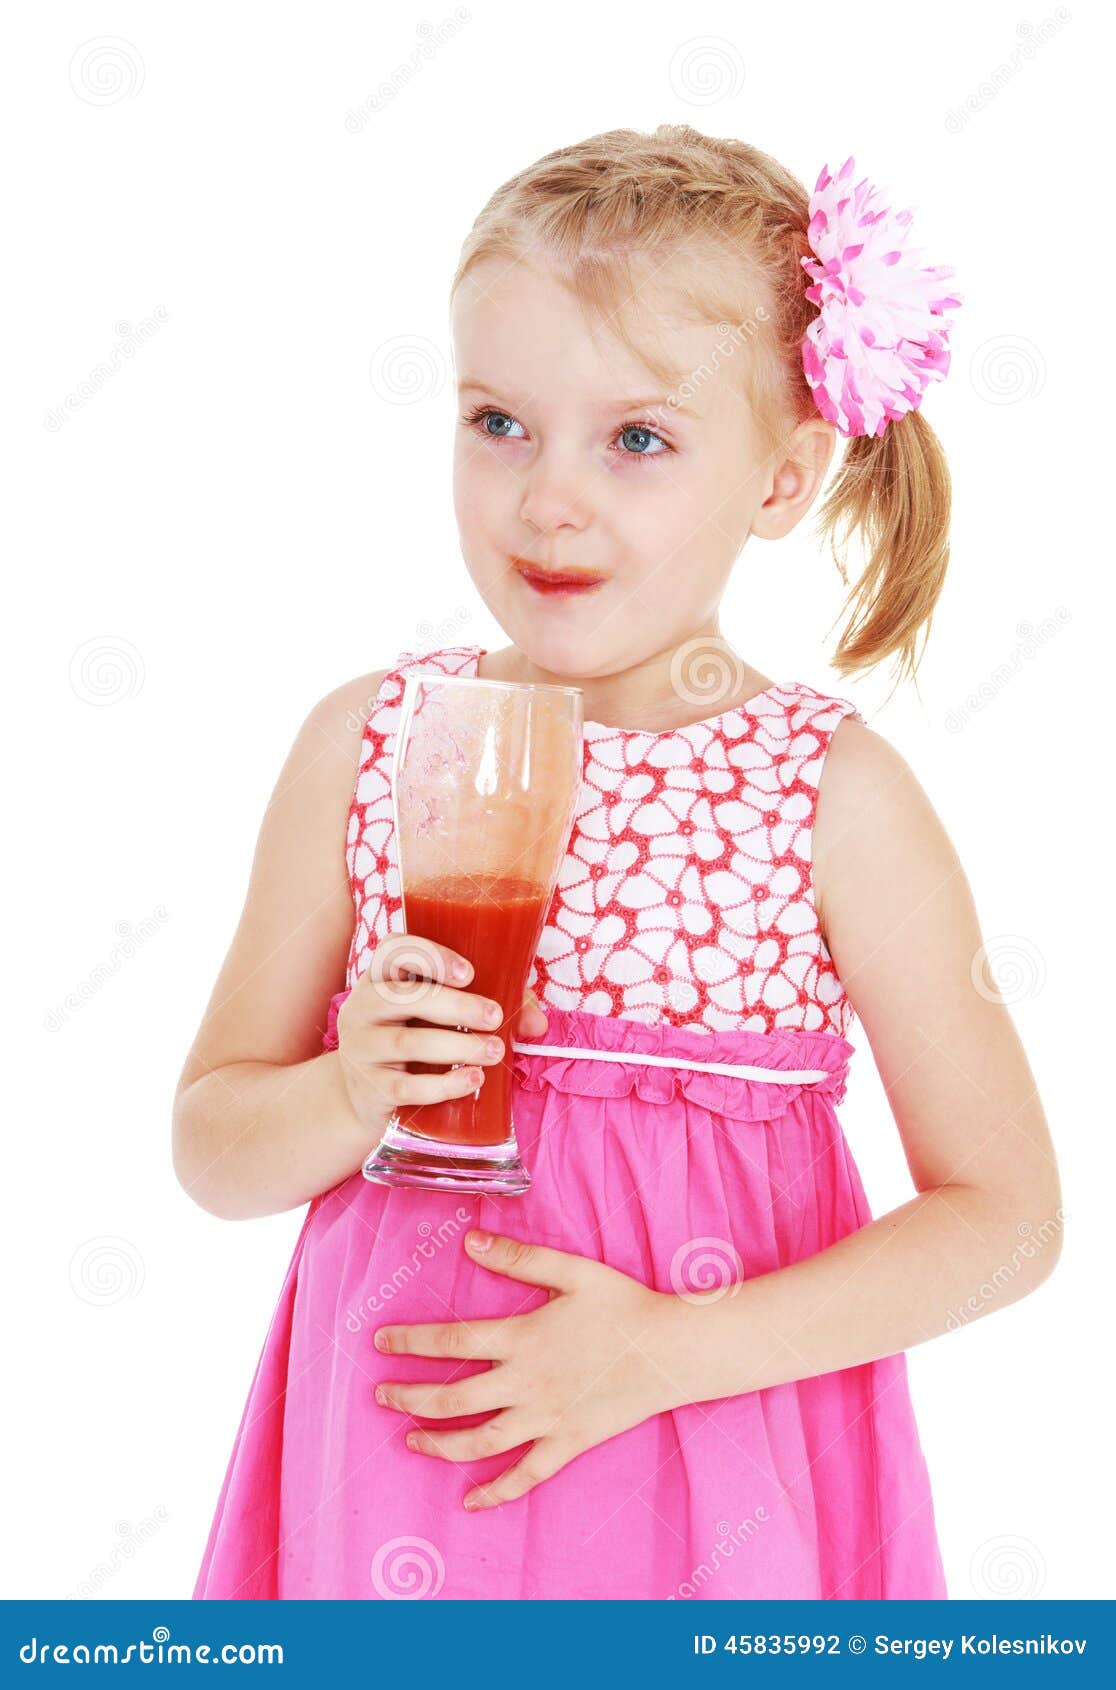 маленькая девочка пьет сперму фото 77